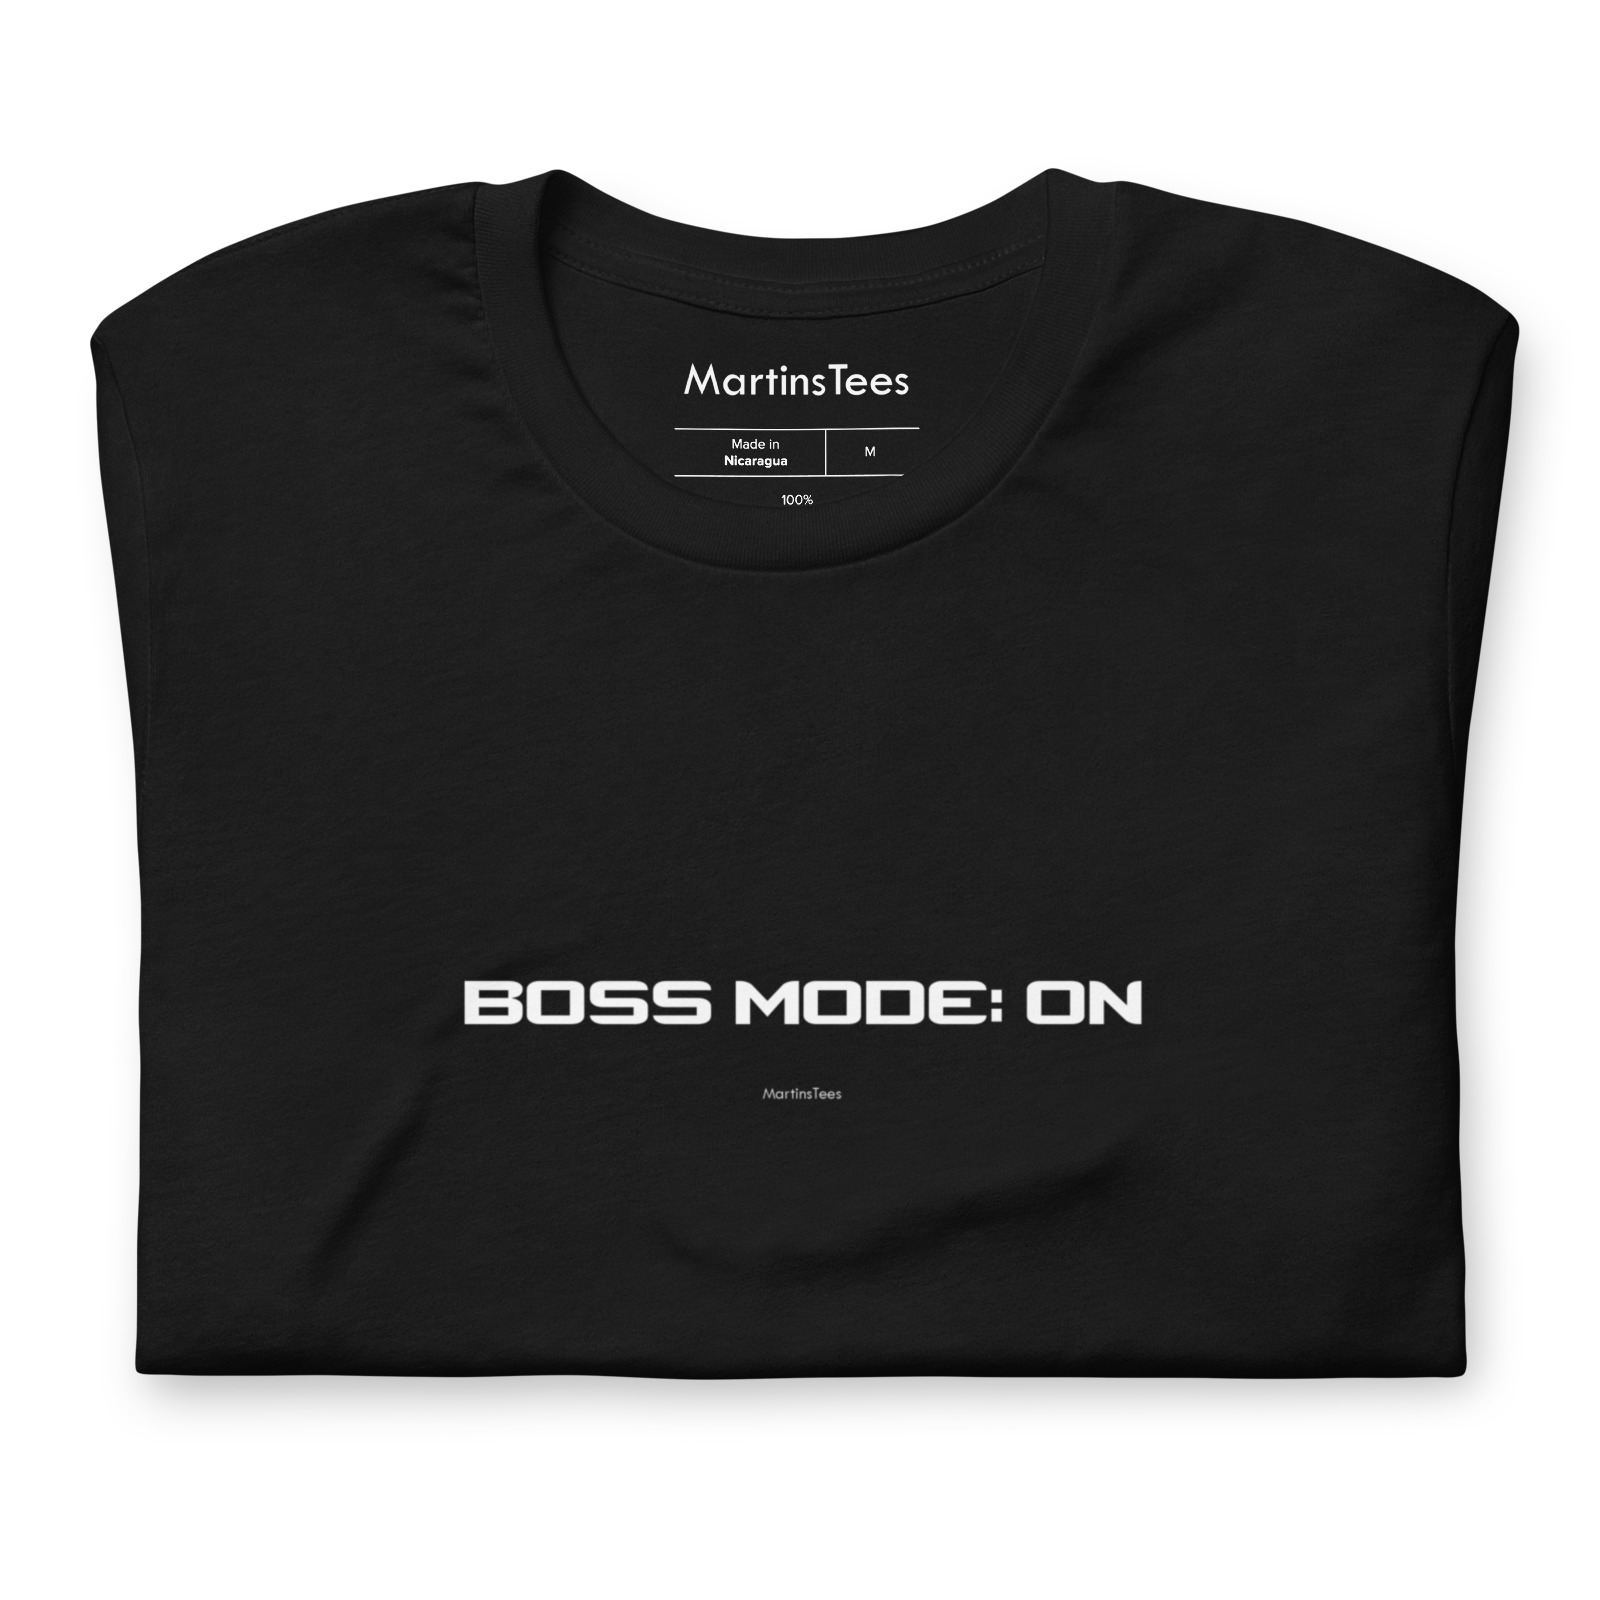 T-shirt: BOSS MODE: ON